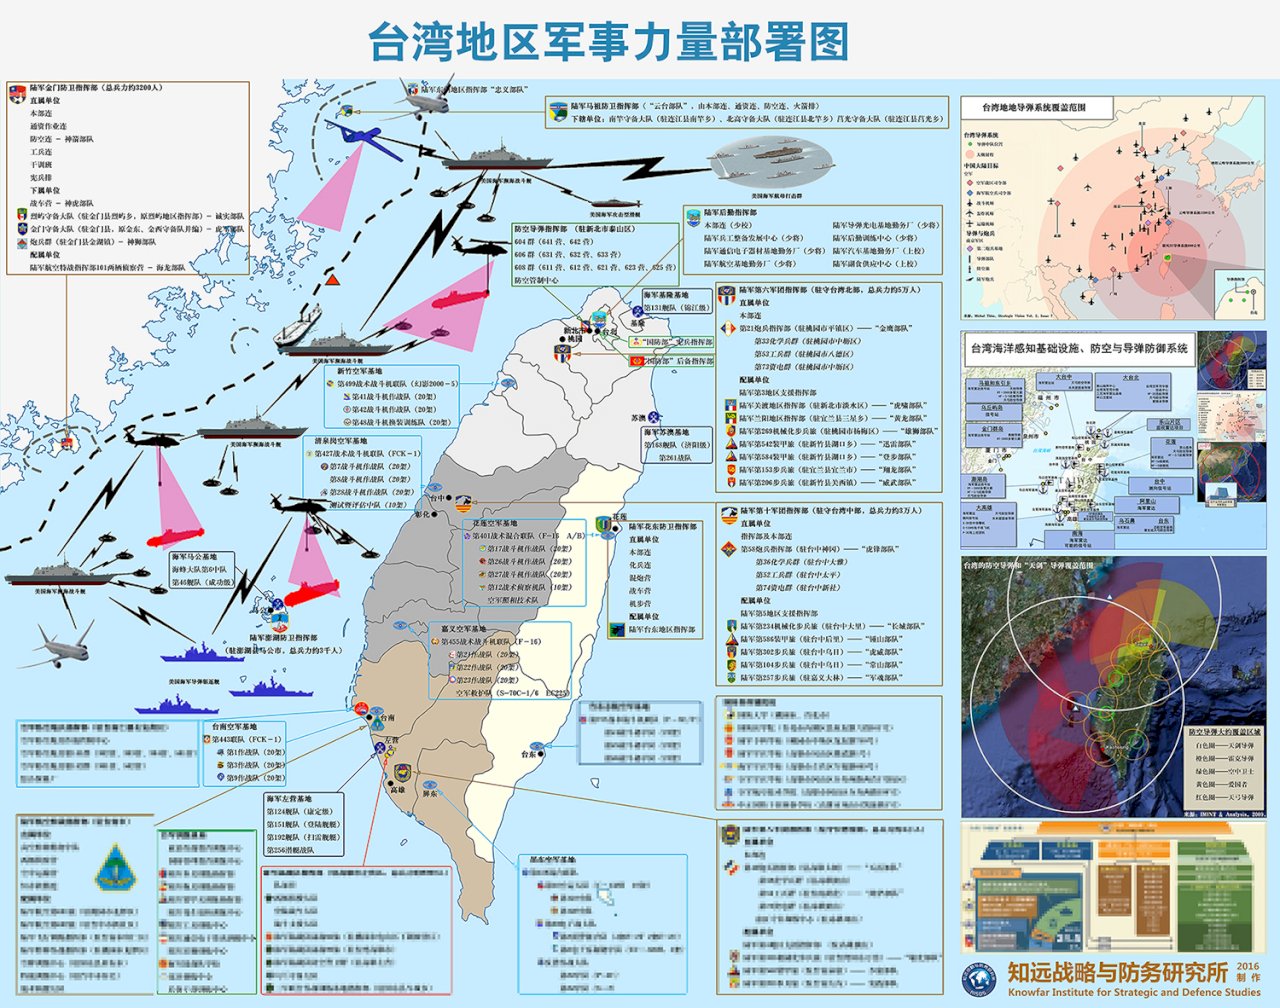 中國機構發售台灣軍力部署圖 內容詳盡